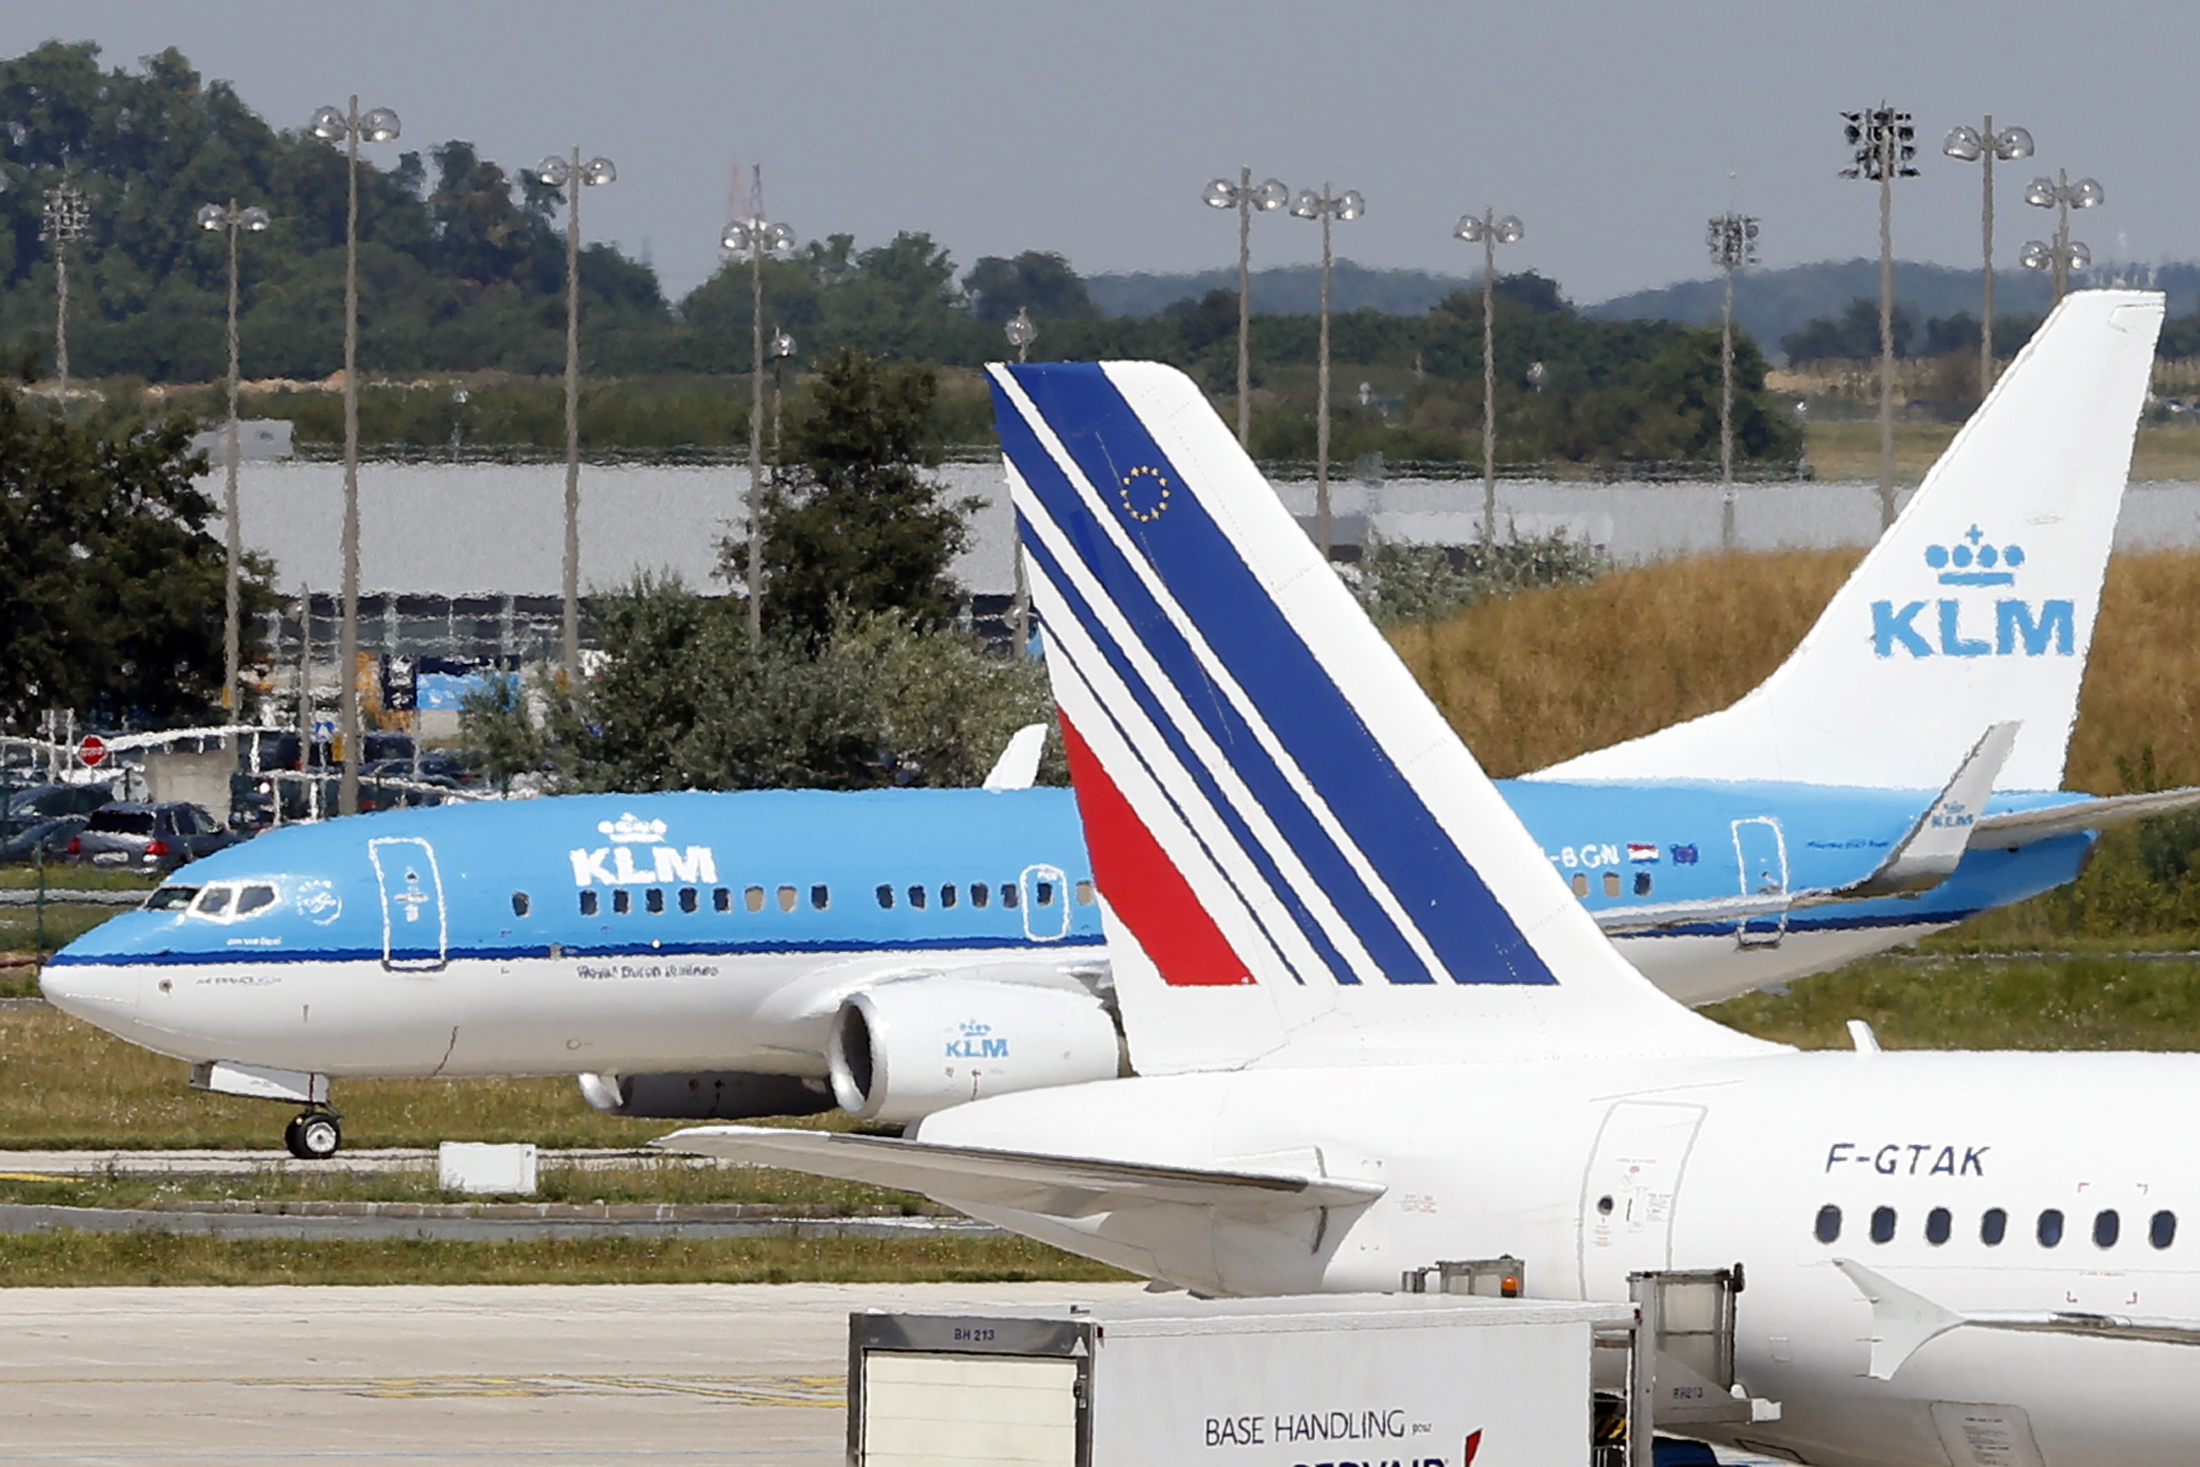 Pour survivre au Covid-19, Air France-KLM négocie un prêt bancaire (massif) garanti par Paris et La Haye